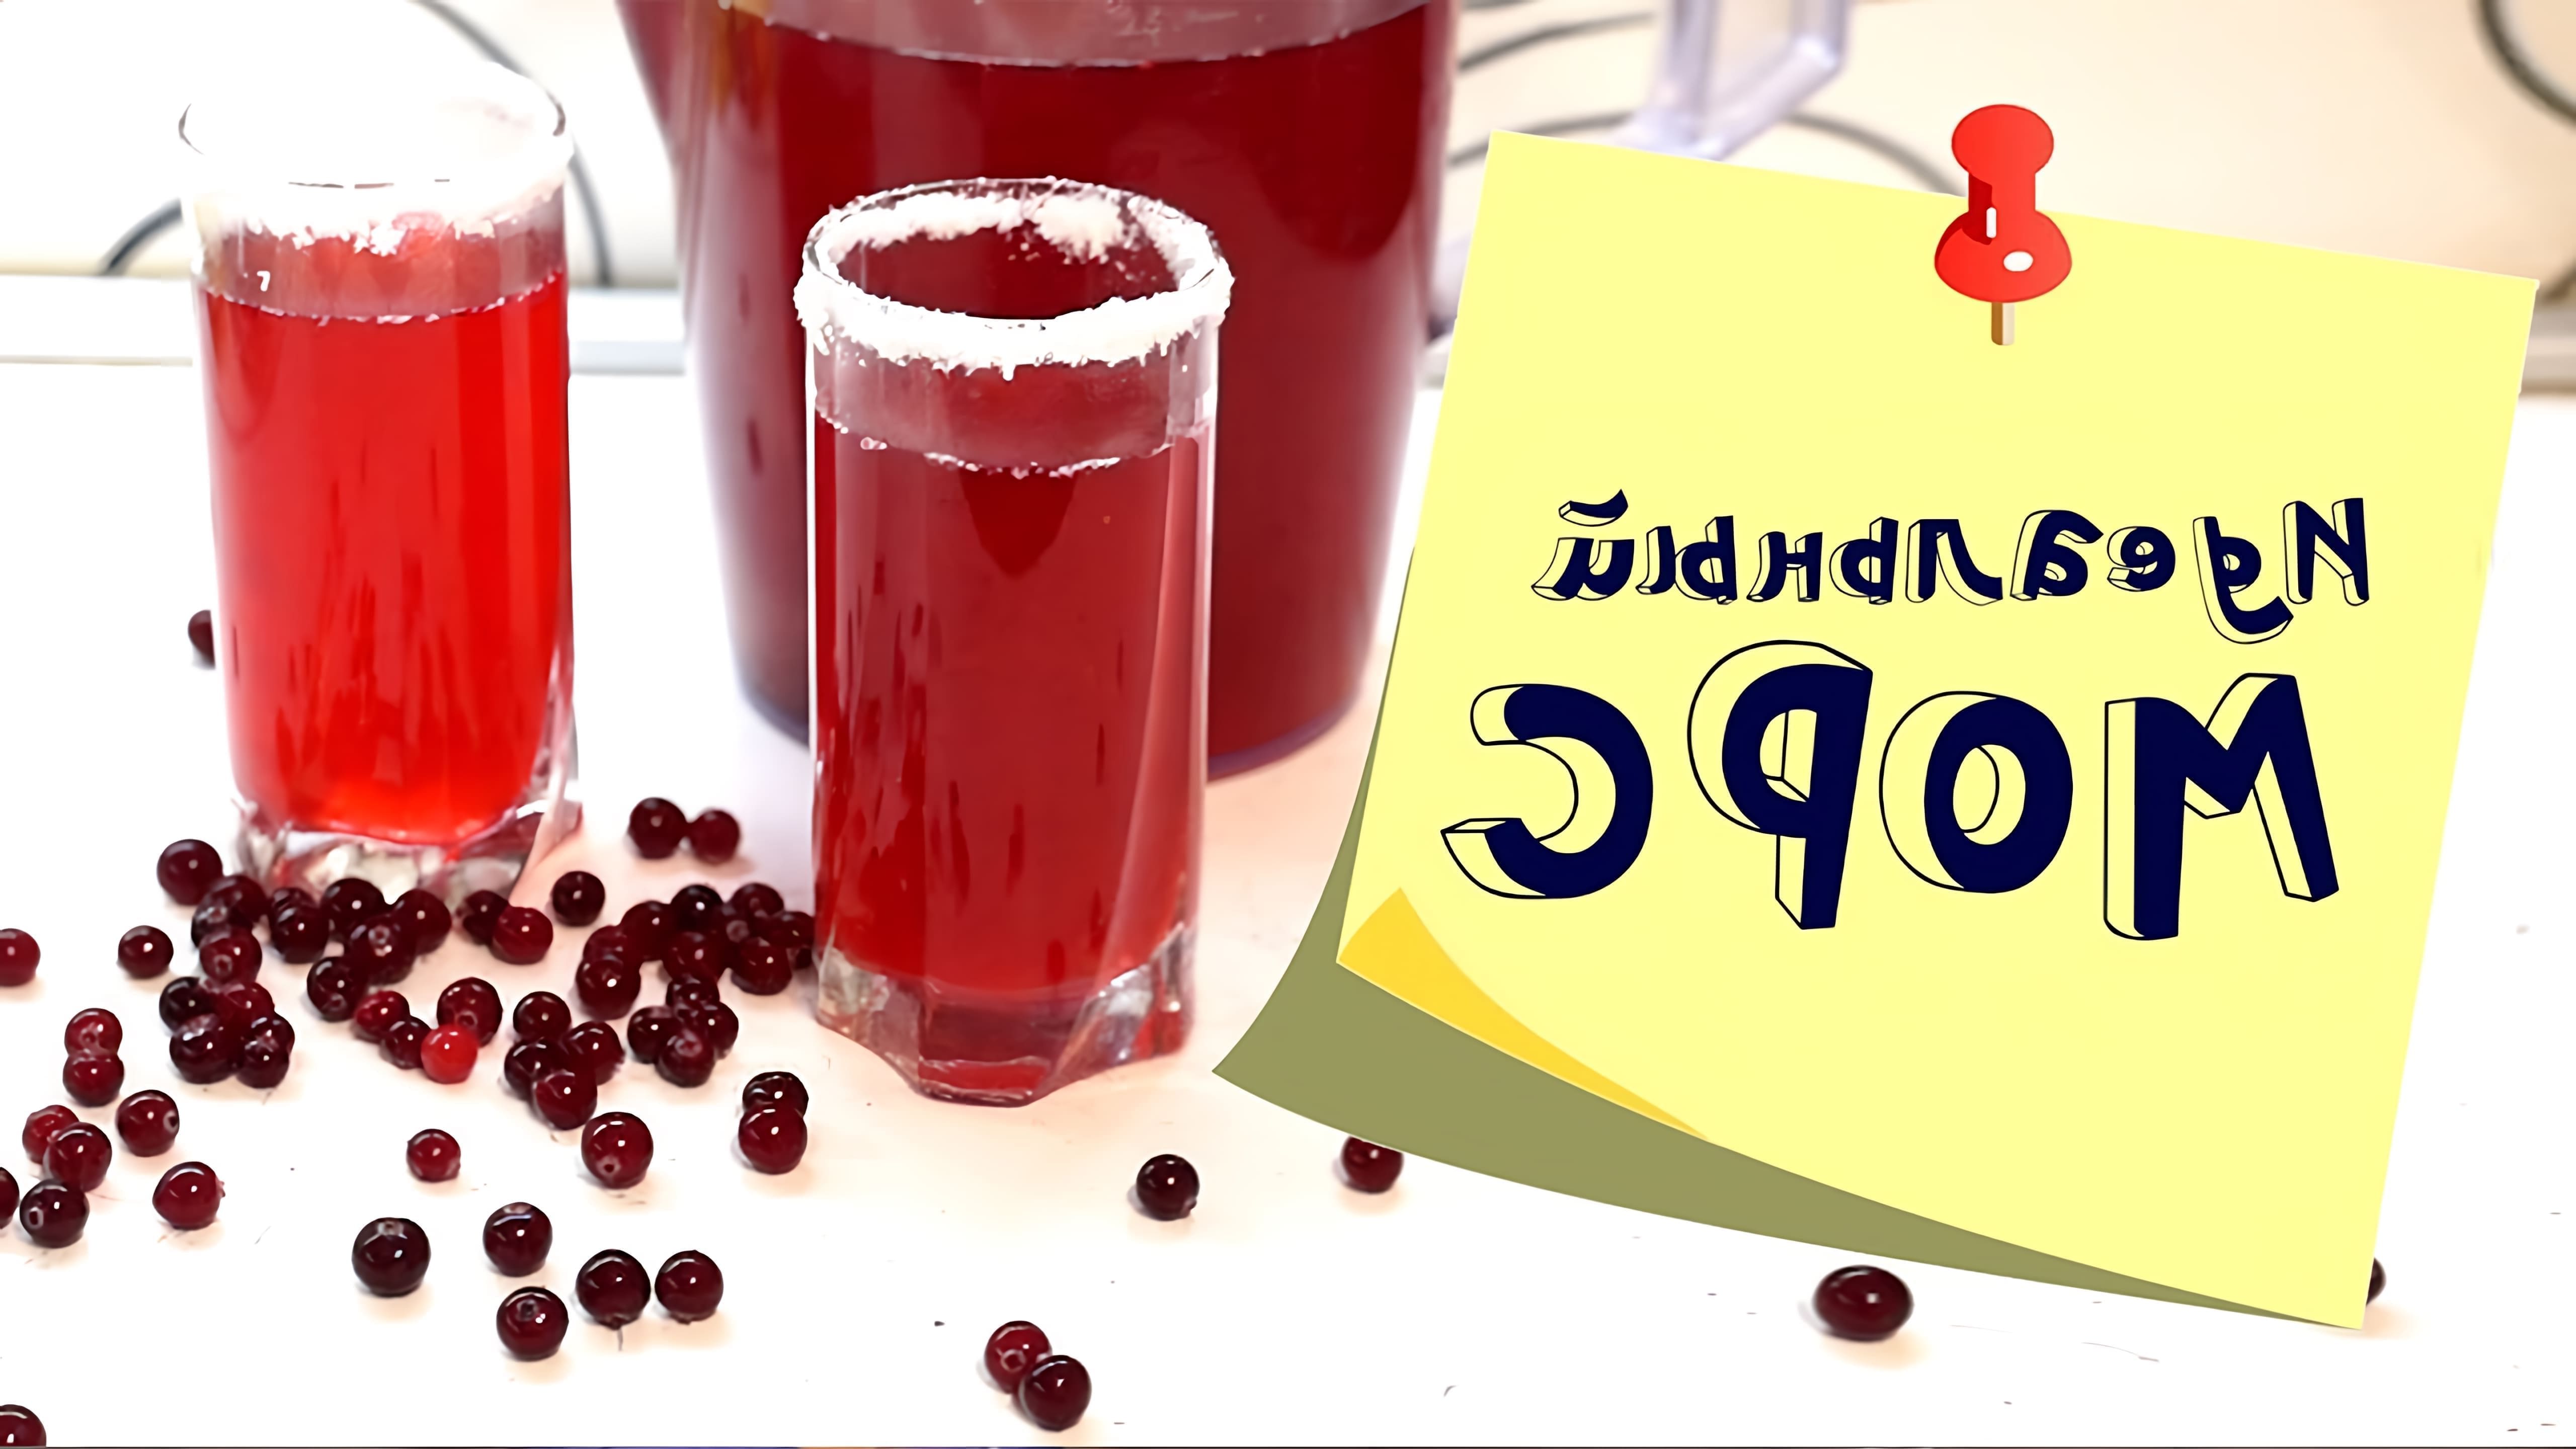 В этом видео Светлана делится рецептом клюквенного морса, который является одним из любимых новогодних напитков